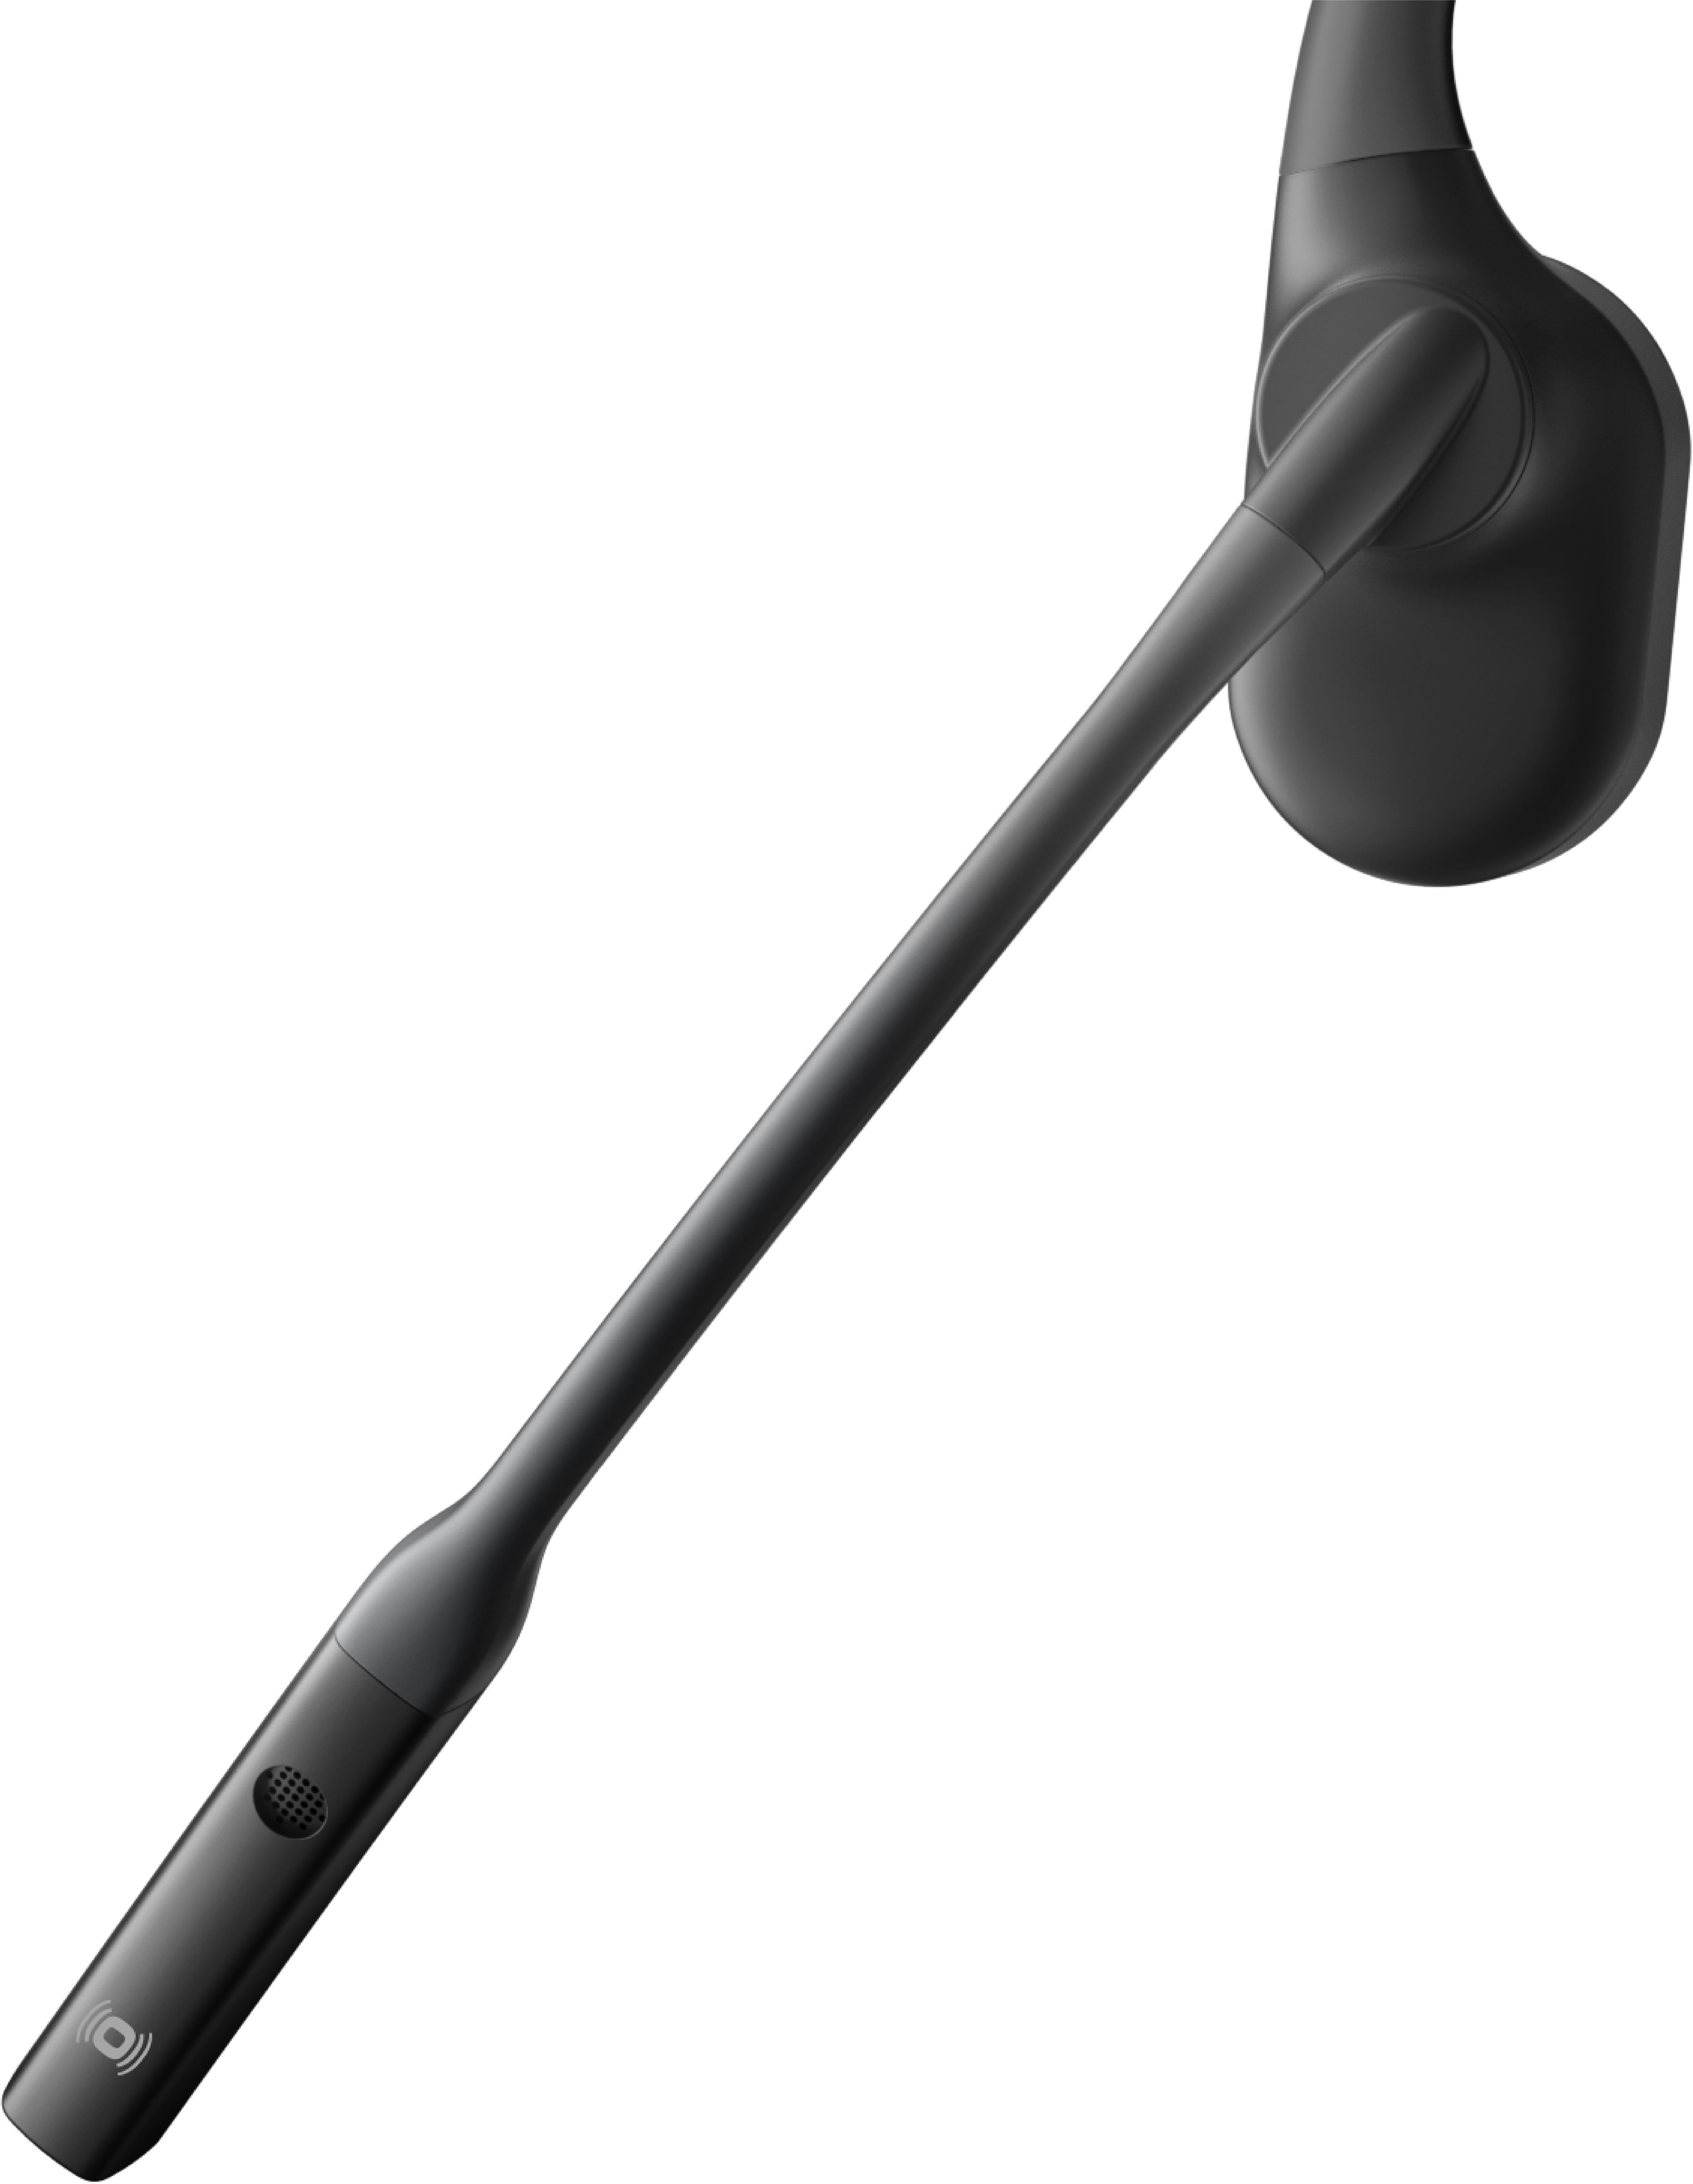 Left View: BlueParrott - B350-XT Wireless On-Ear Headset - Black